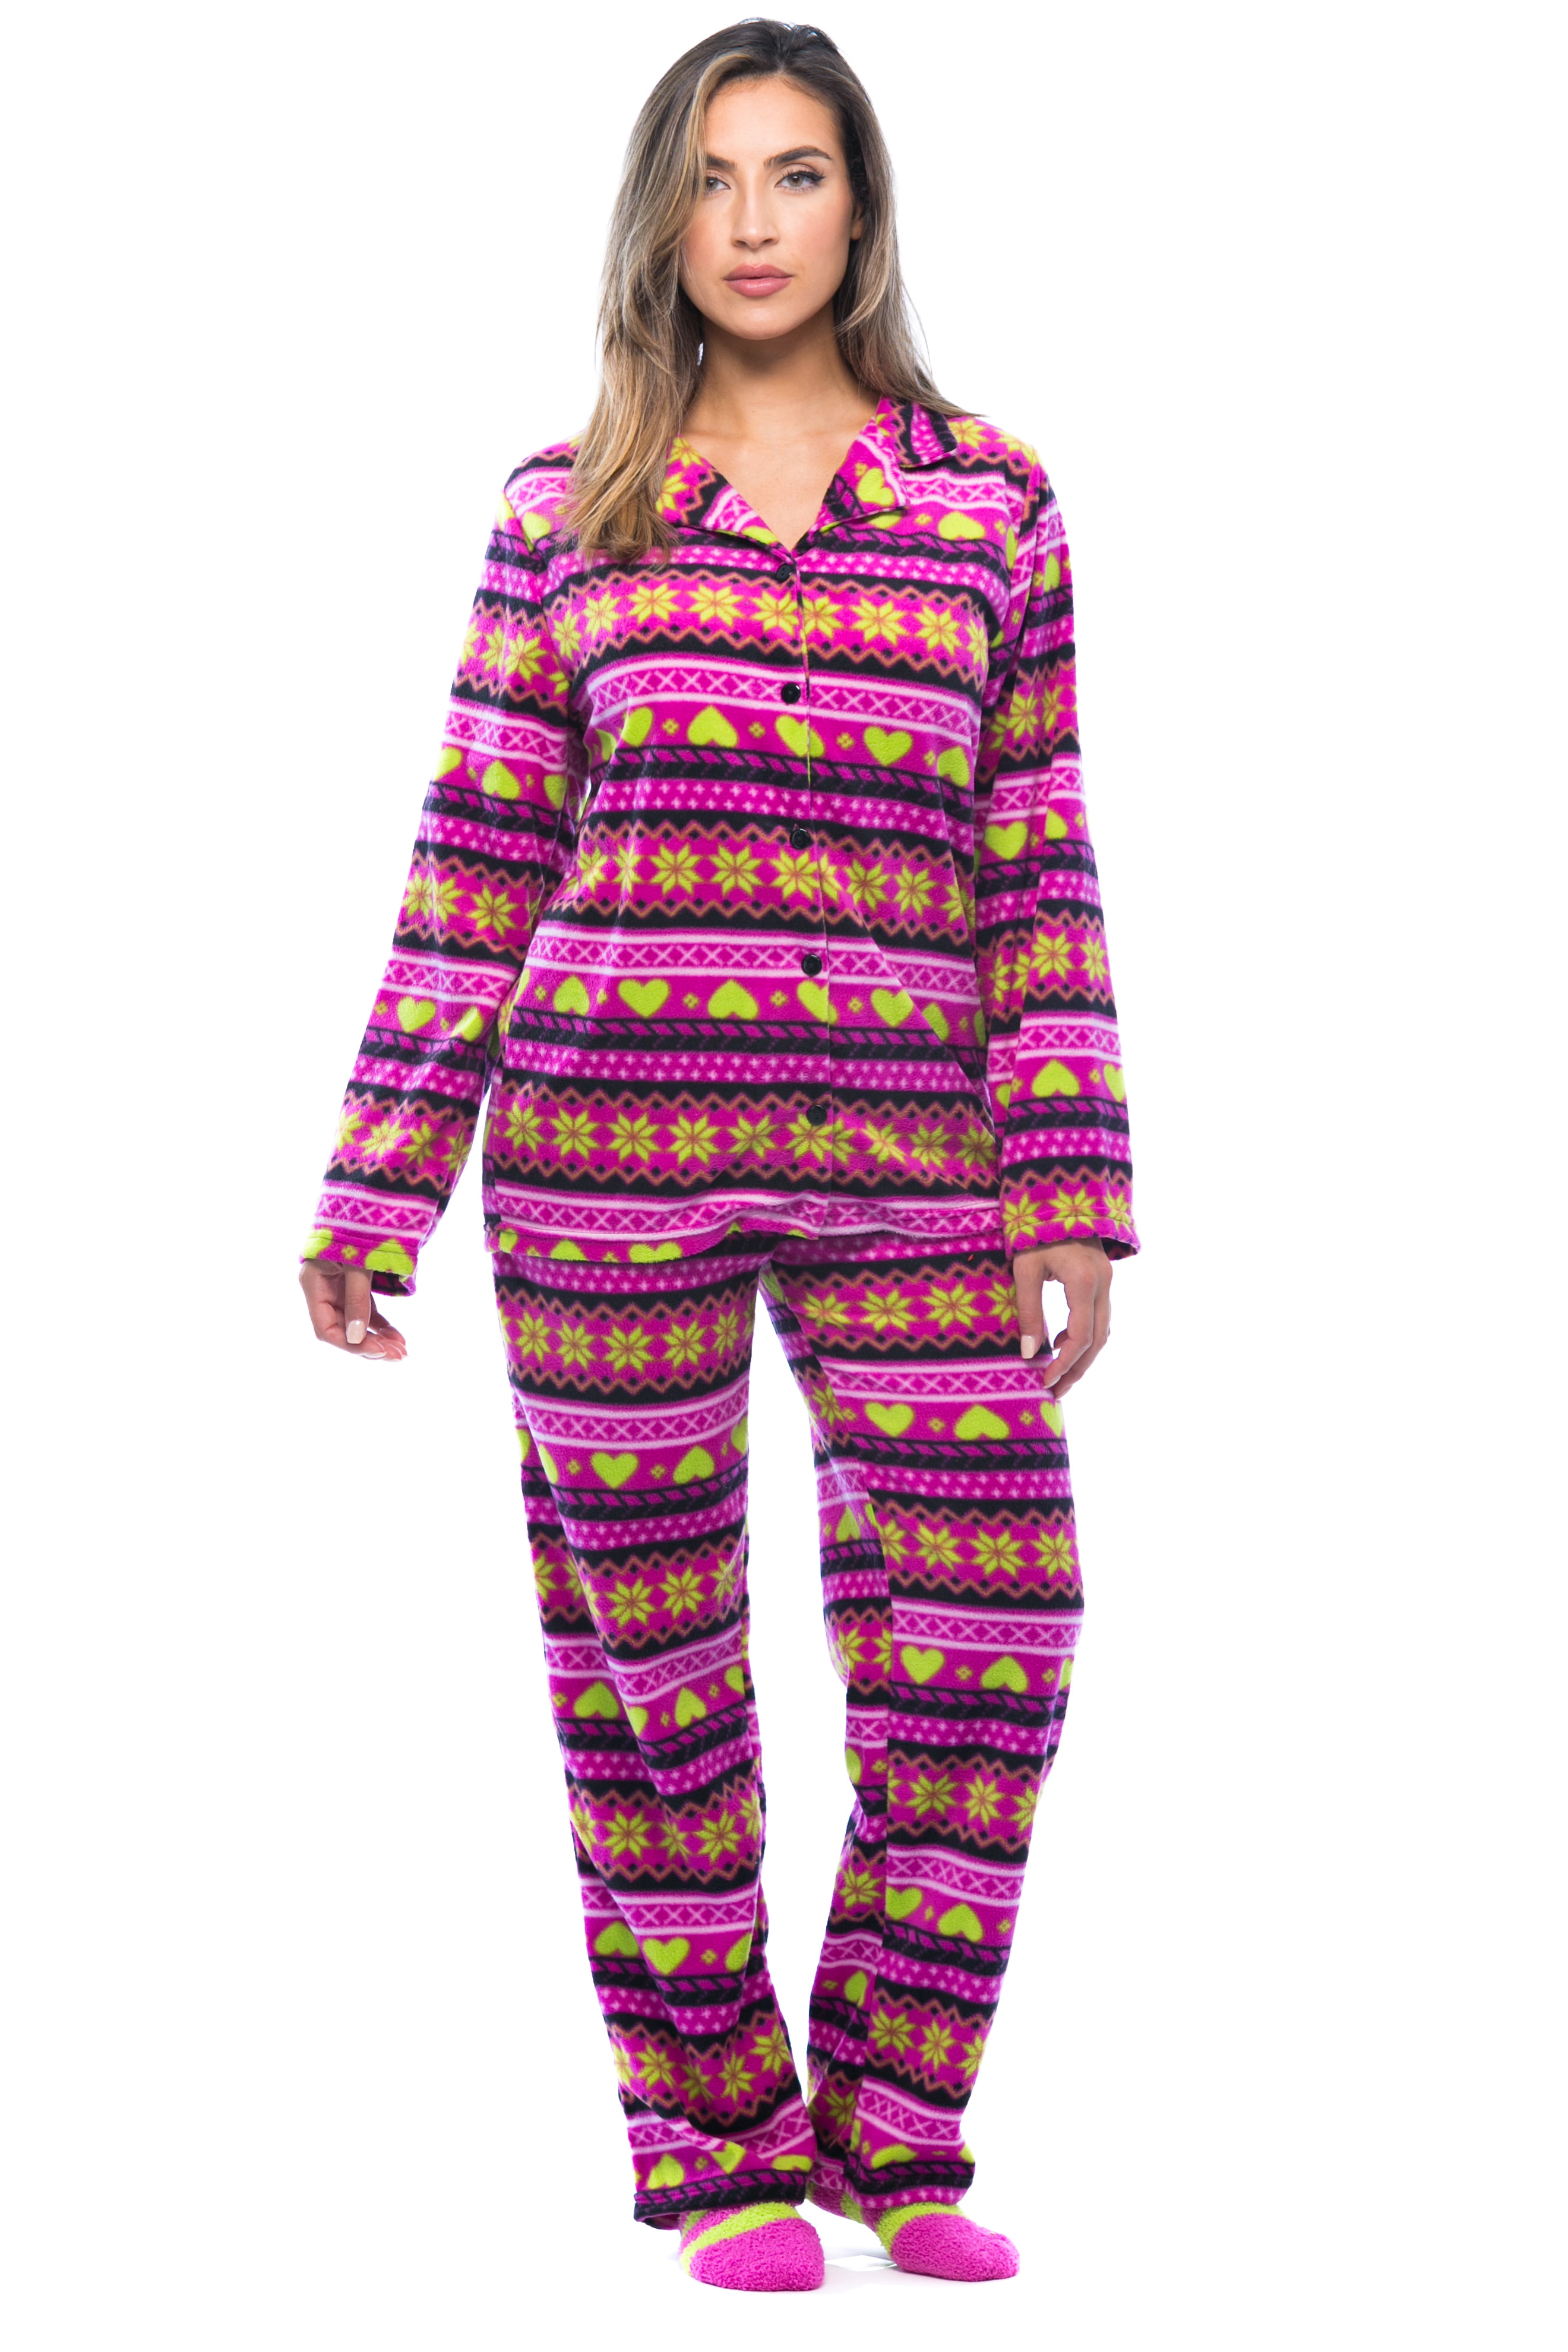 Zexxxy Womens Onesie Christmas Pajama Set Cotton Hoodie Footed Sleepwear All in One Snowflake Printed Pjs